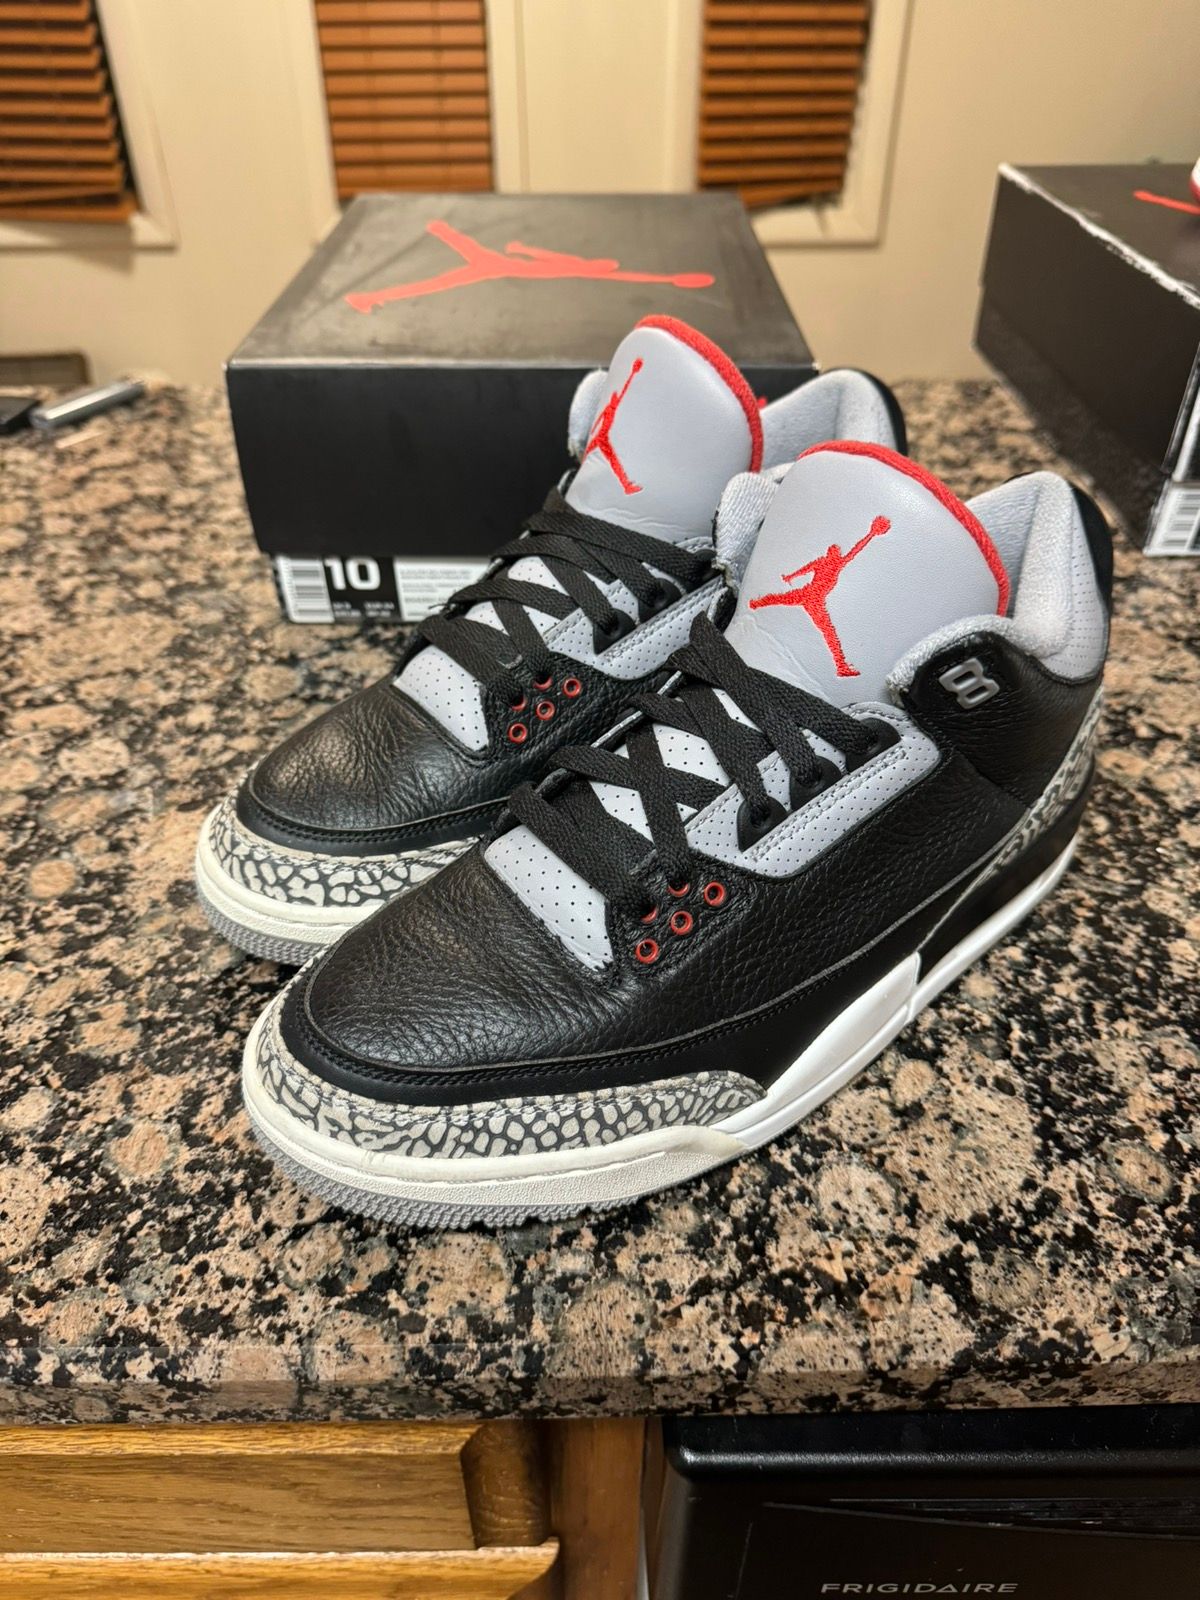 Pre-owned Jordan Brand Nike Air Jordan Retro 3 Black Cement 2018 Shoes